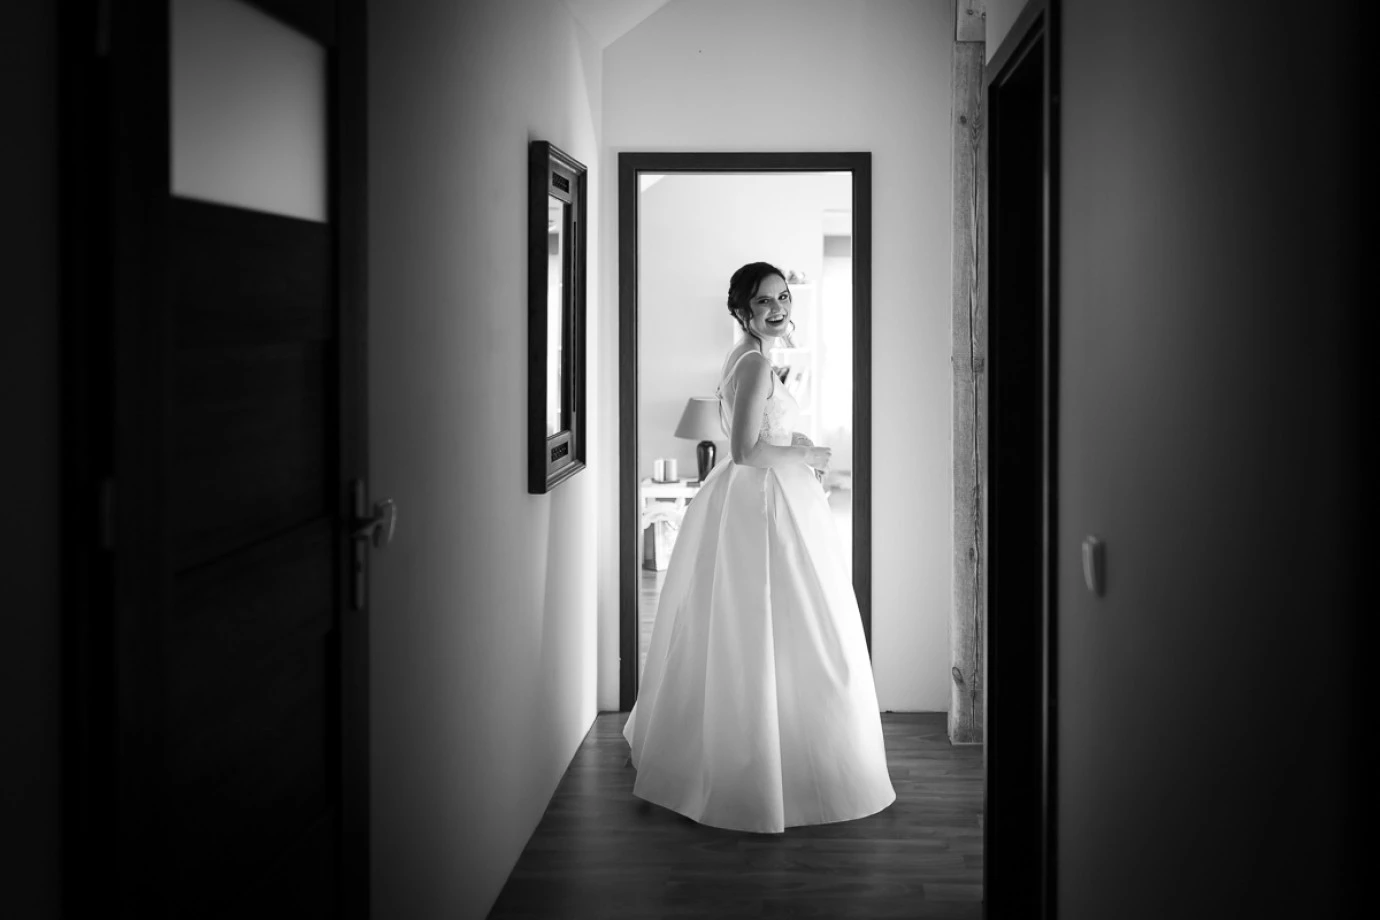 zdjęcia  fotograf tomasz-macherzynski portfolio zdjecia slubne inspiracje wesele plener slubny sesja slubna